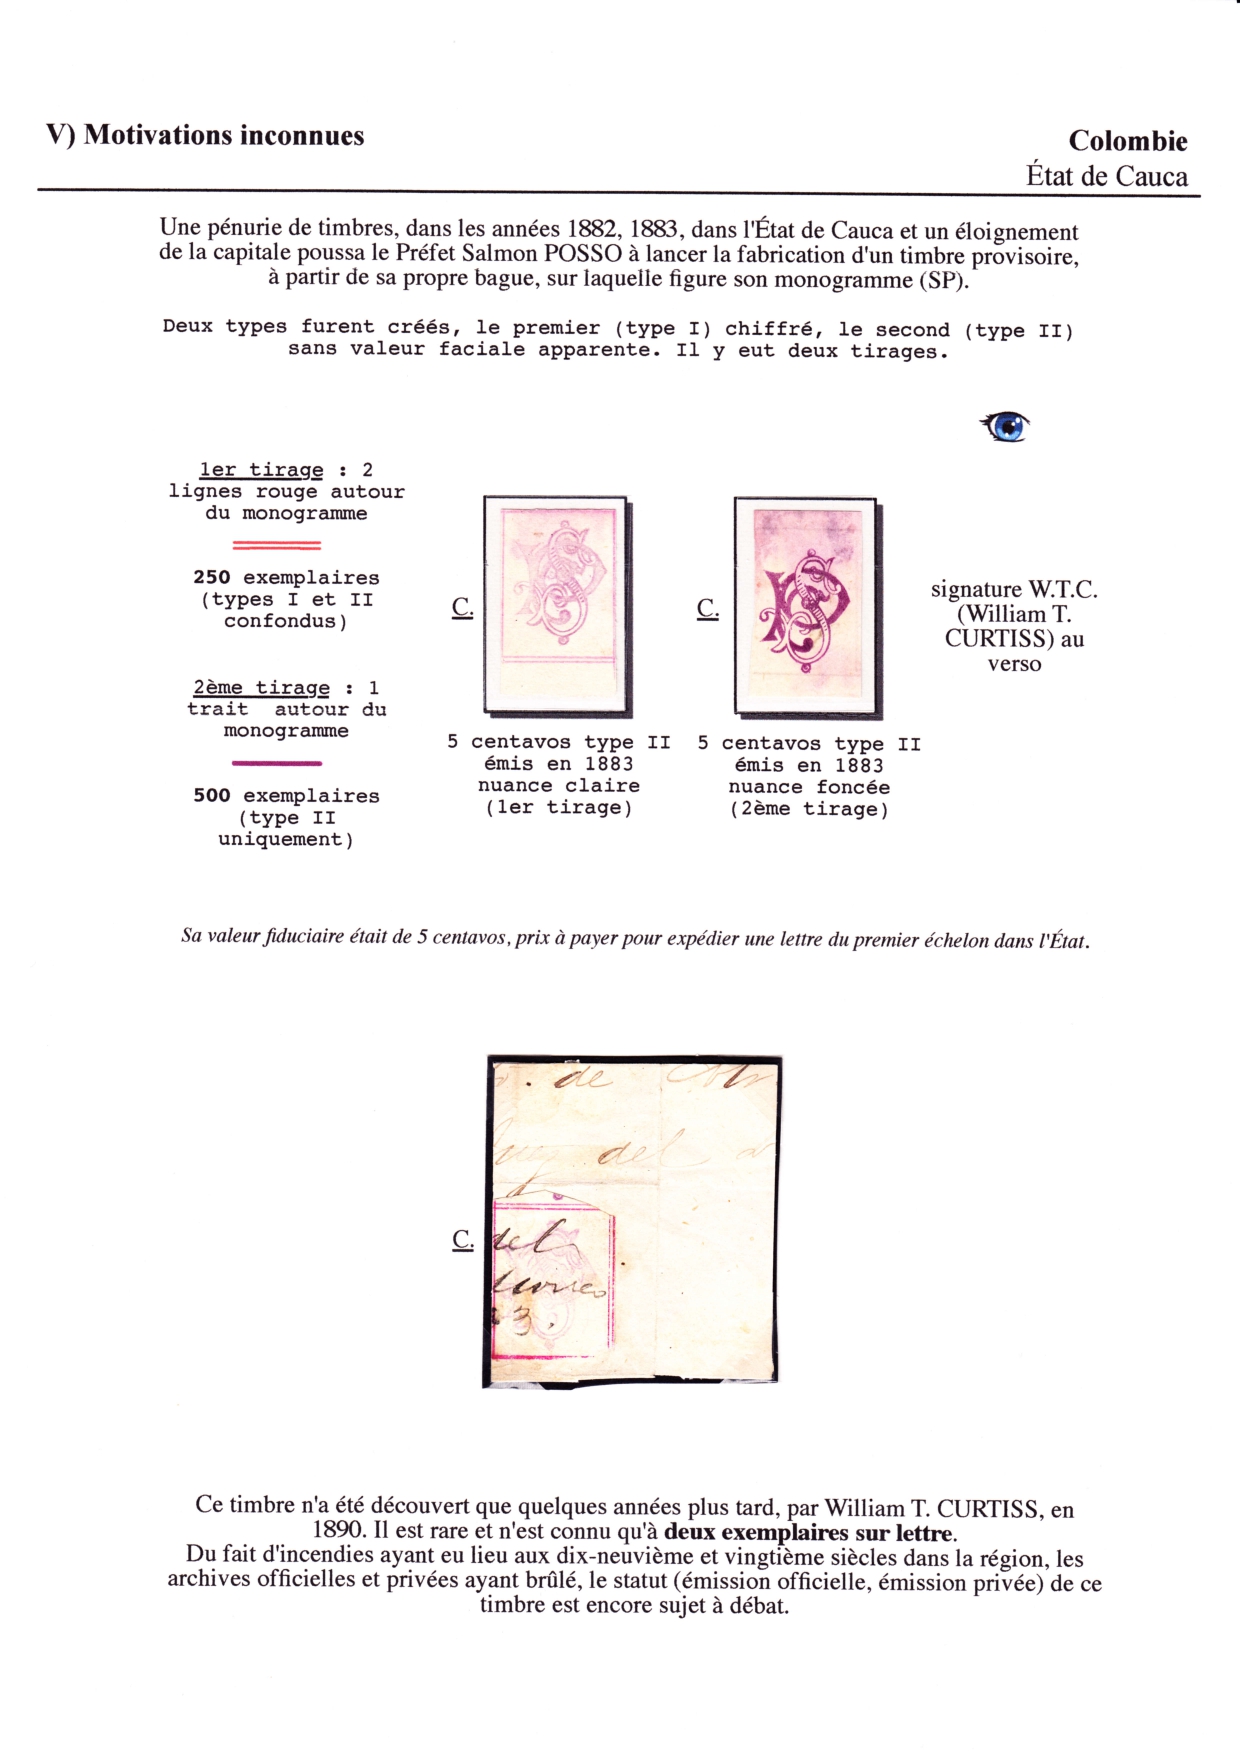 Les d��buts des timbres sans valeur faciale apparente p. 80